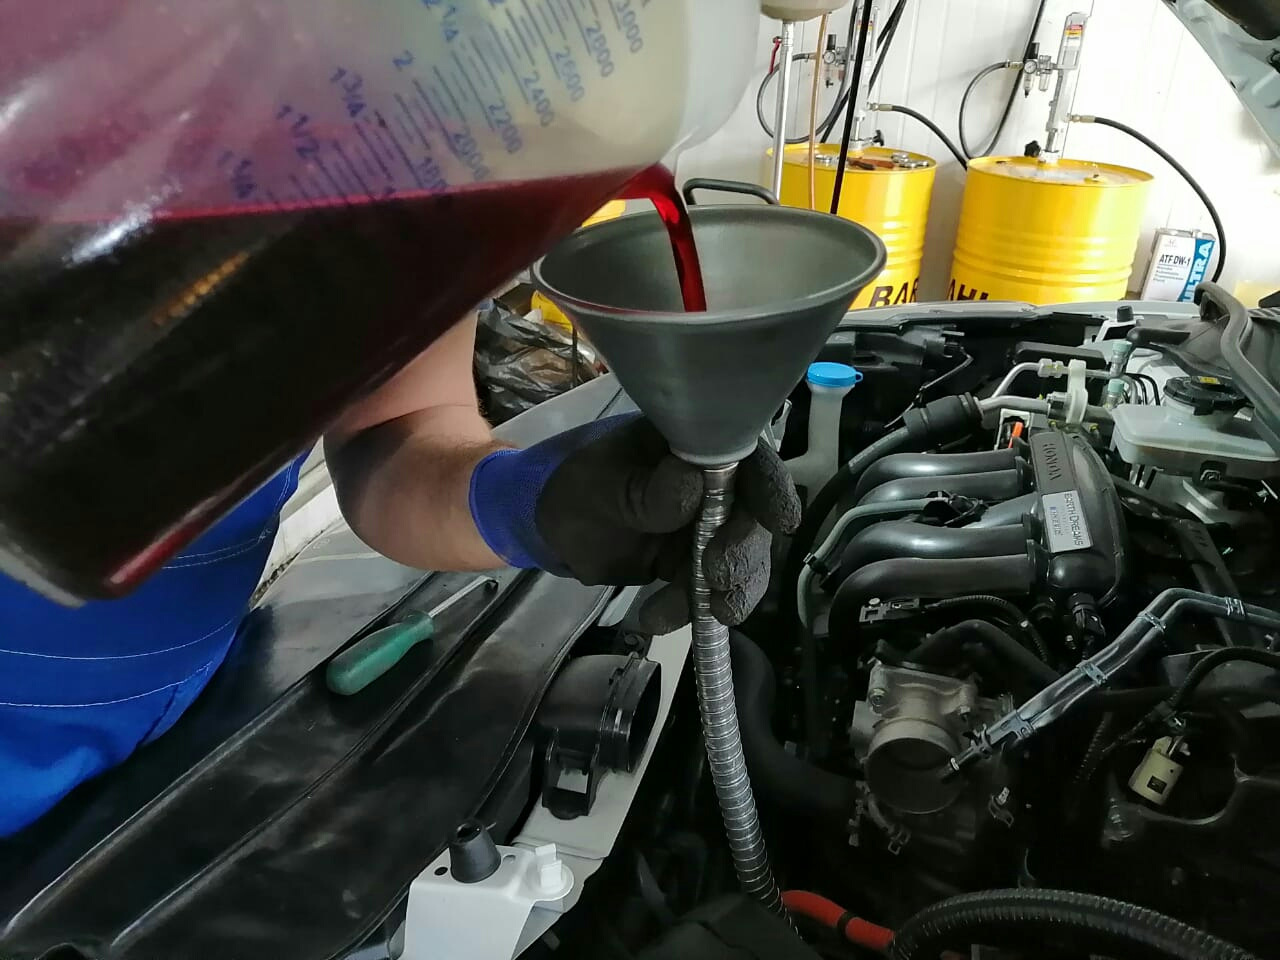 Honda vezel масло. Газель долить масло в двигатель. Воронка для залива масла в АКПП через щуп. Honda Fit замена масла робот 2016. Доливка масла в штабелер.